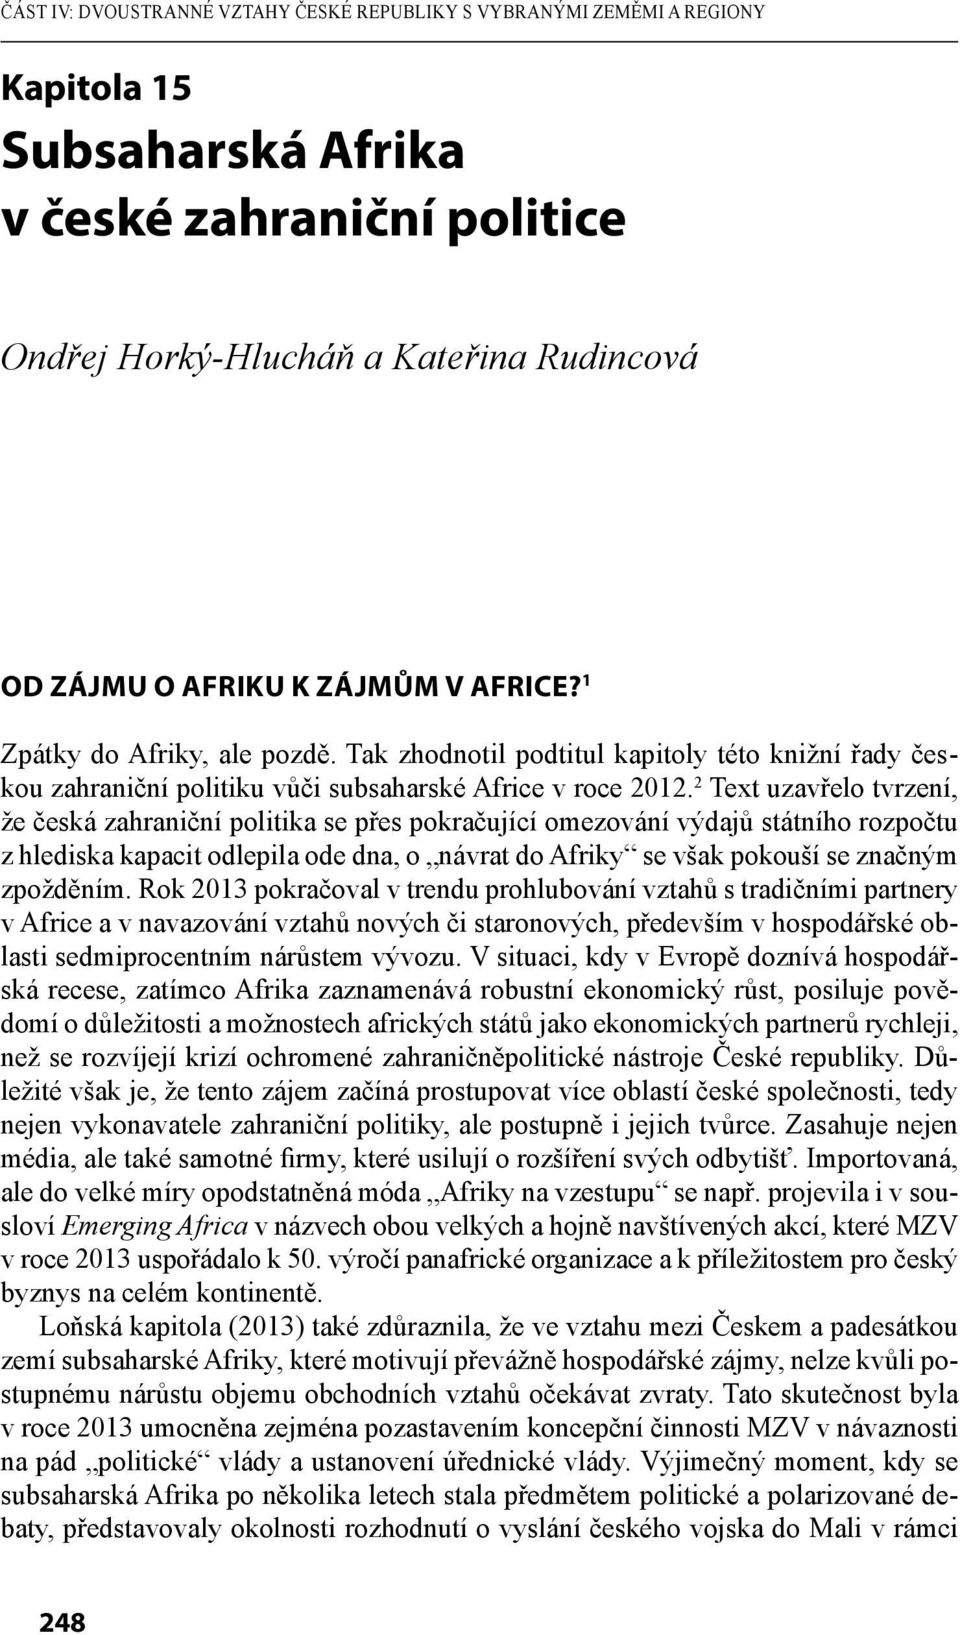 2 Text uzavřelo tvrzení, že česká zahraniční politika se přes pokračující omezování výdajů státního rozpočtu z hlediska kapacit odlepila ode dna, o návrat do Afriky se však pokouší se značným